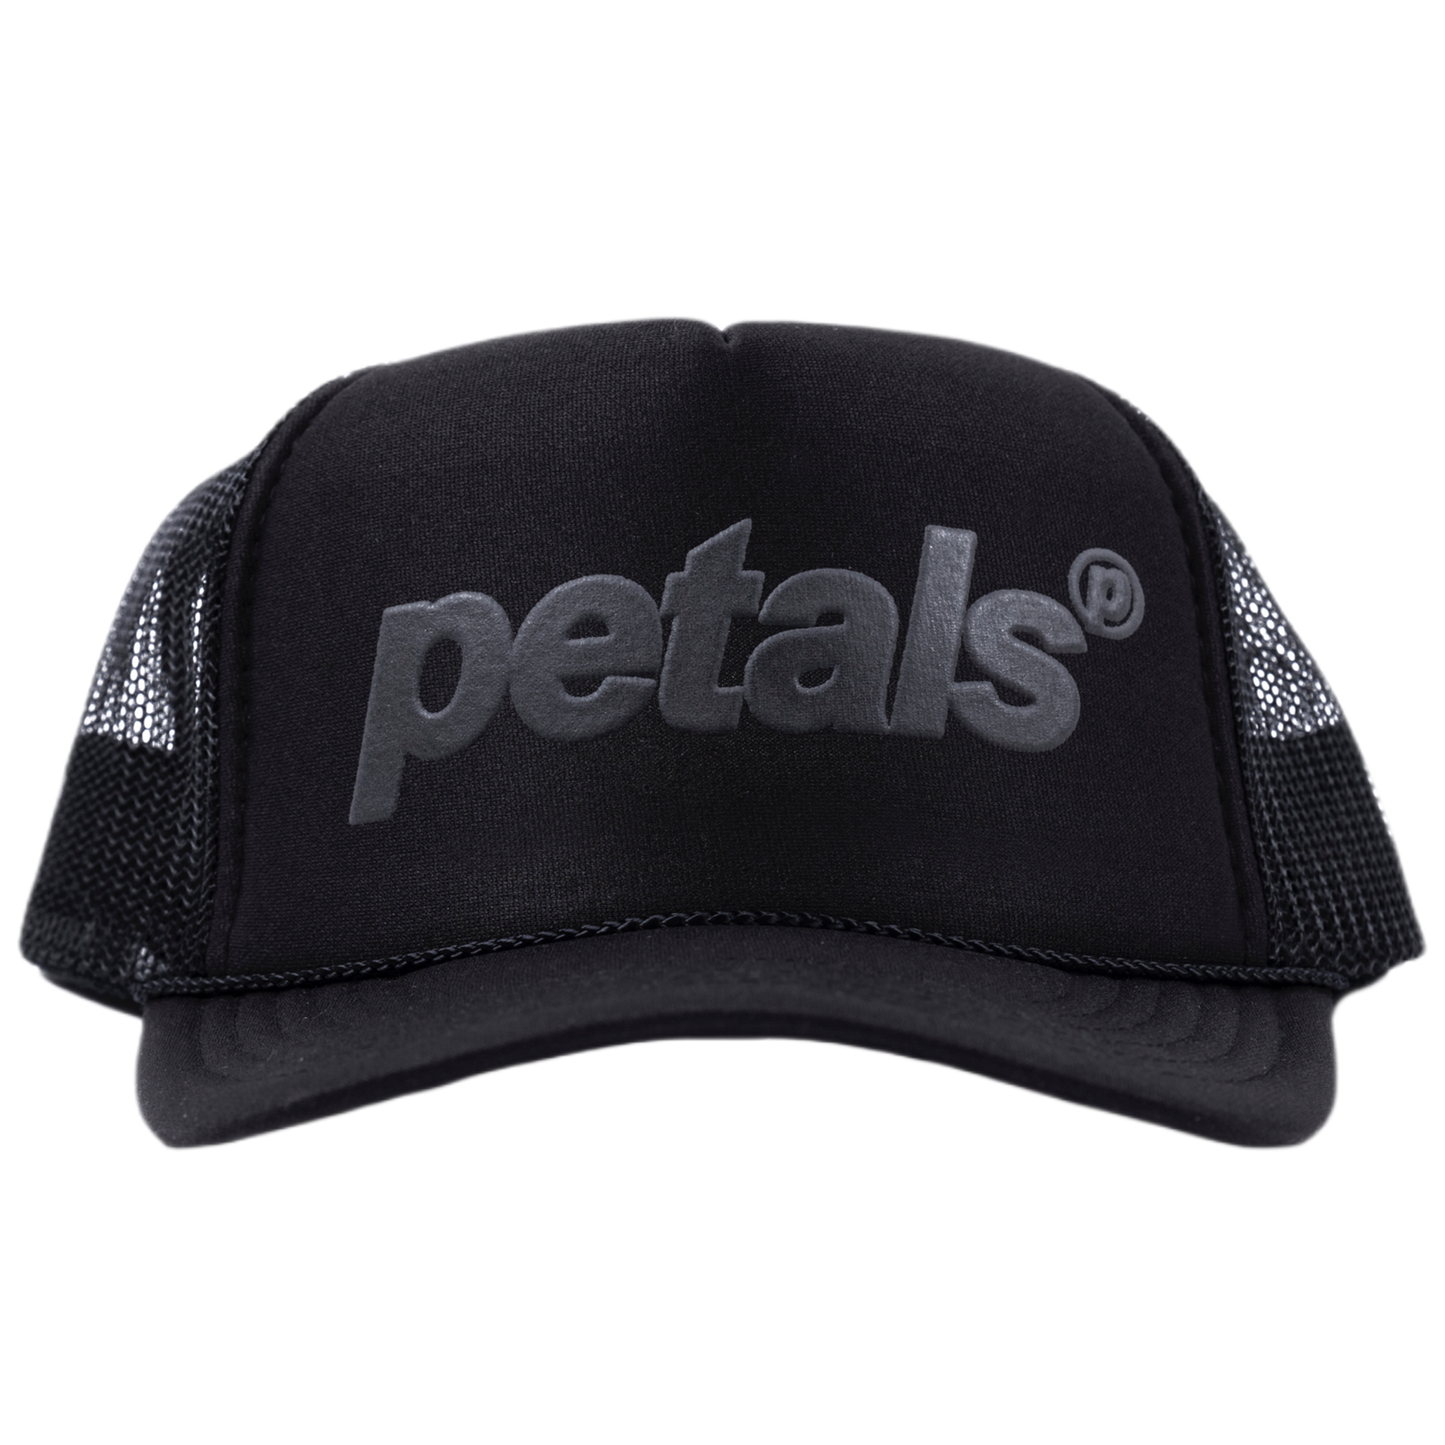 Petals Trucker Hat